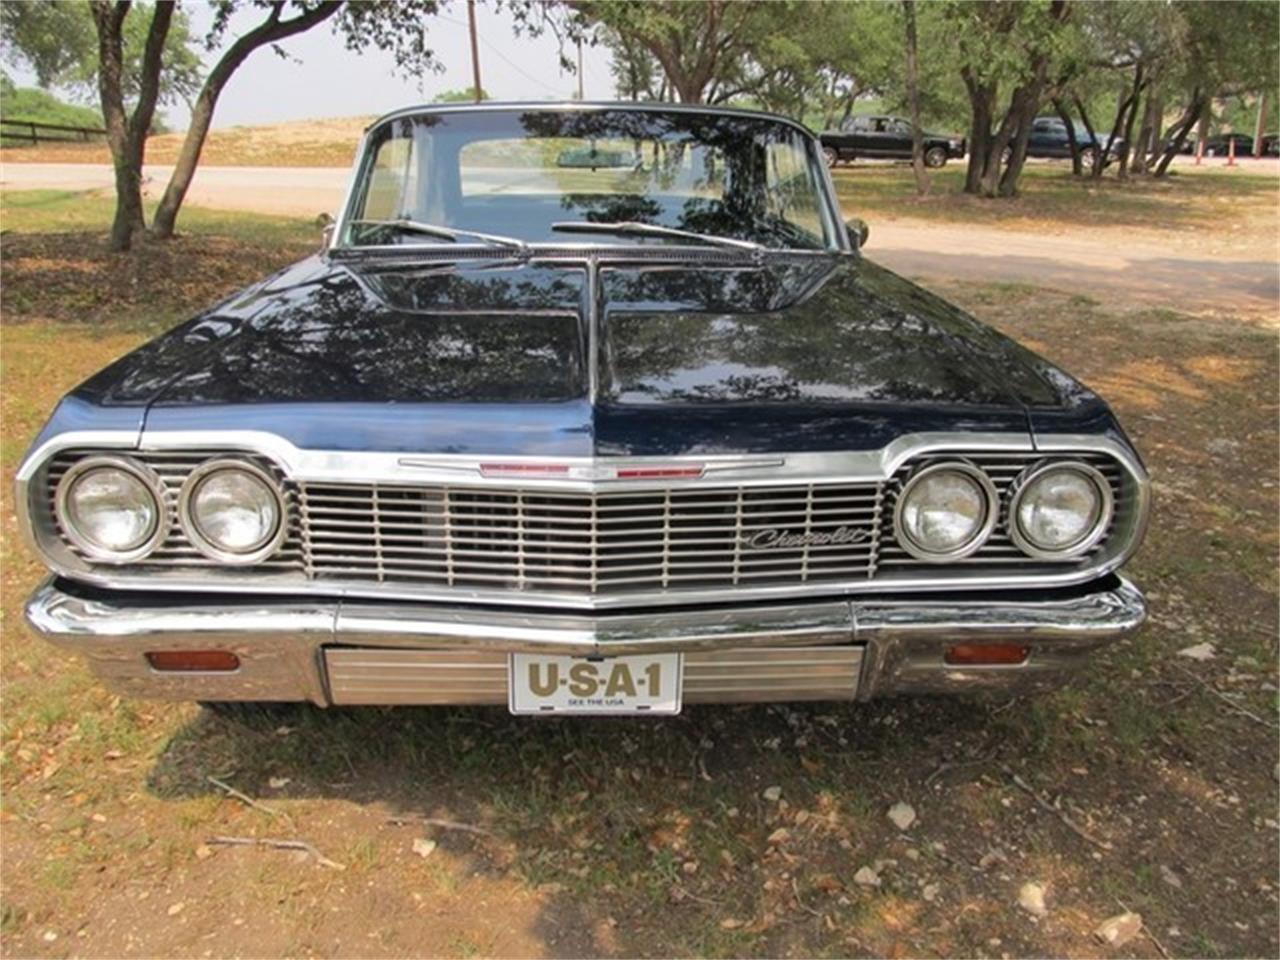 1964 impala for sale craigslist texas